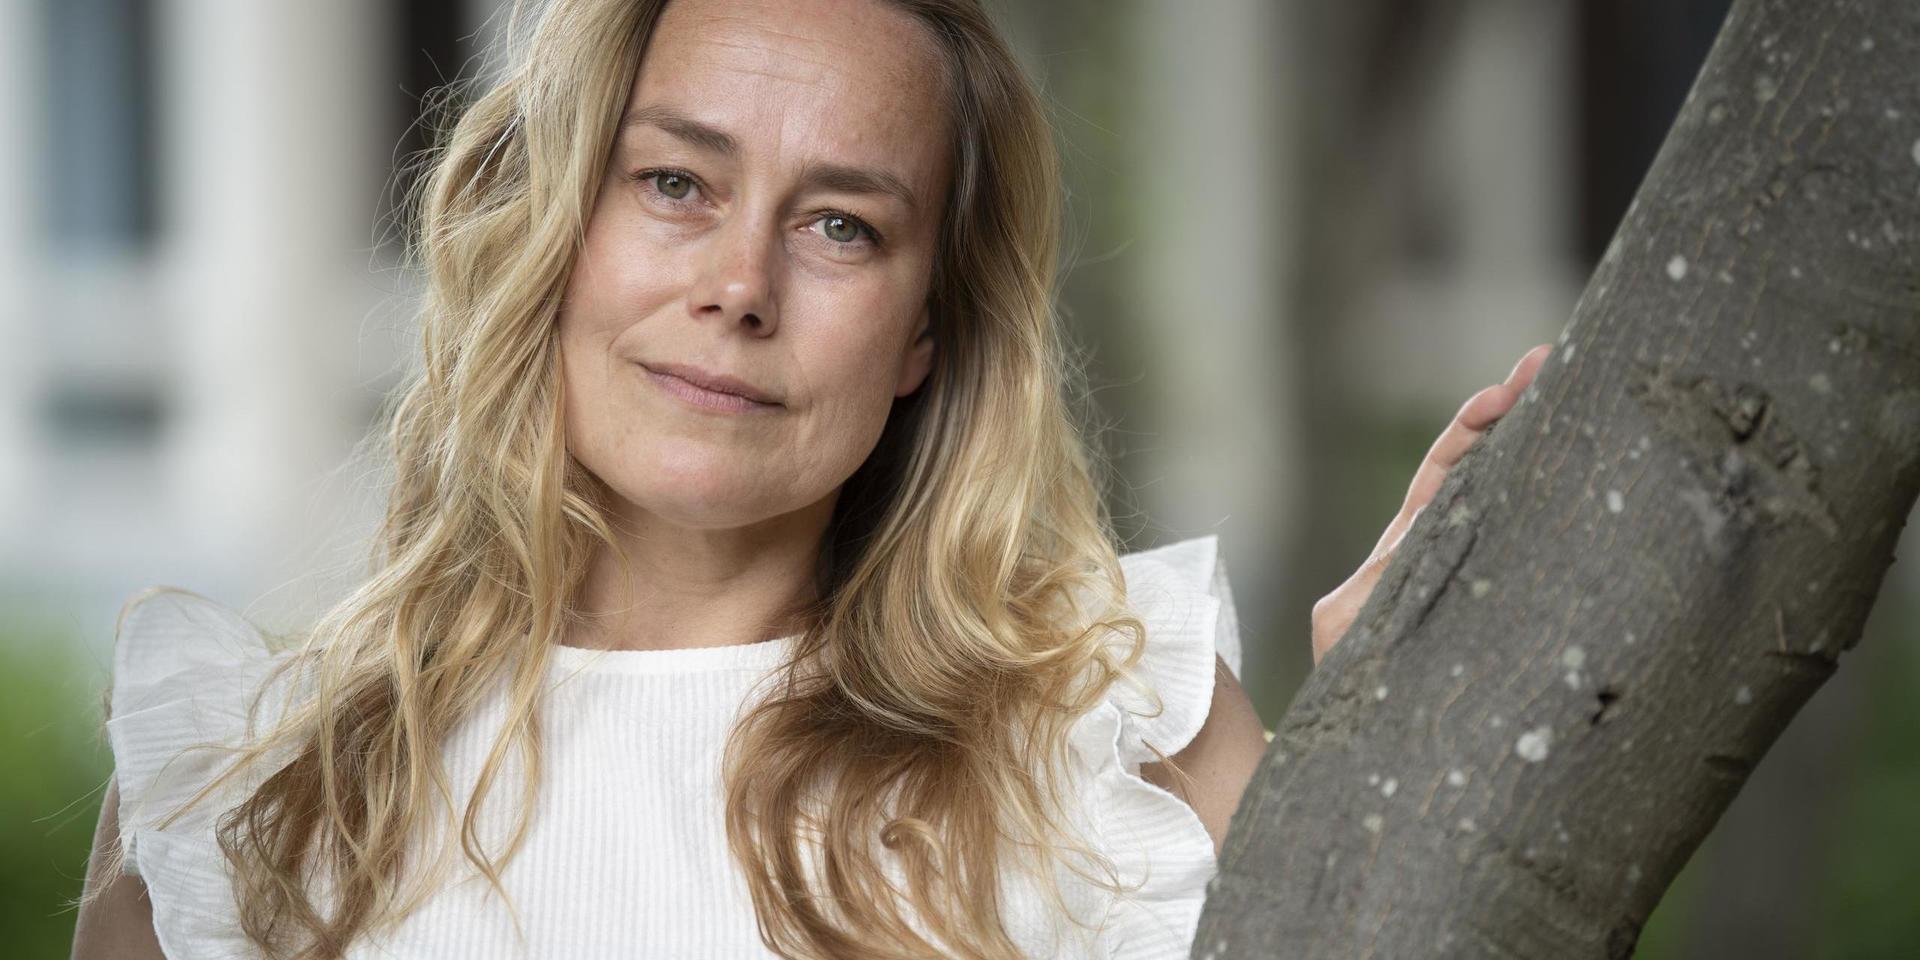 Maria Lindberg är en av flera hundra tusen svenskar som lider av sprutfobi, för henne är tanken på de två doserna mycket stressande.